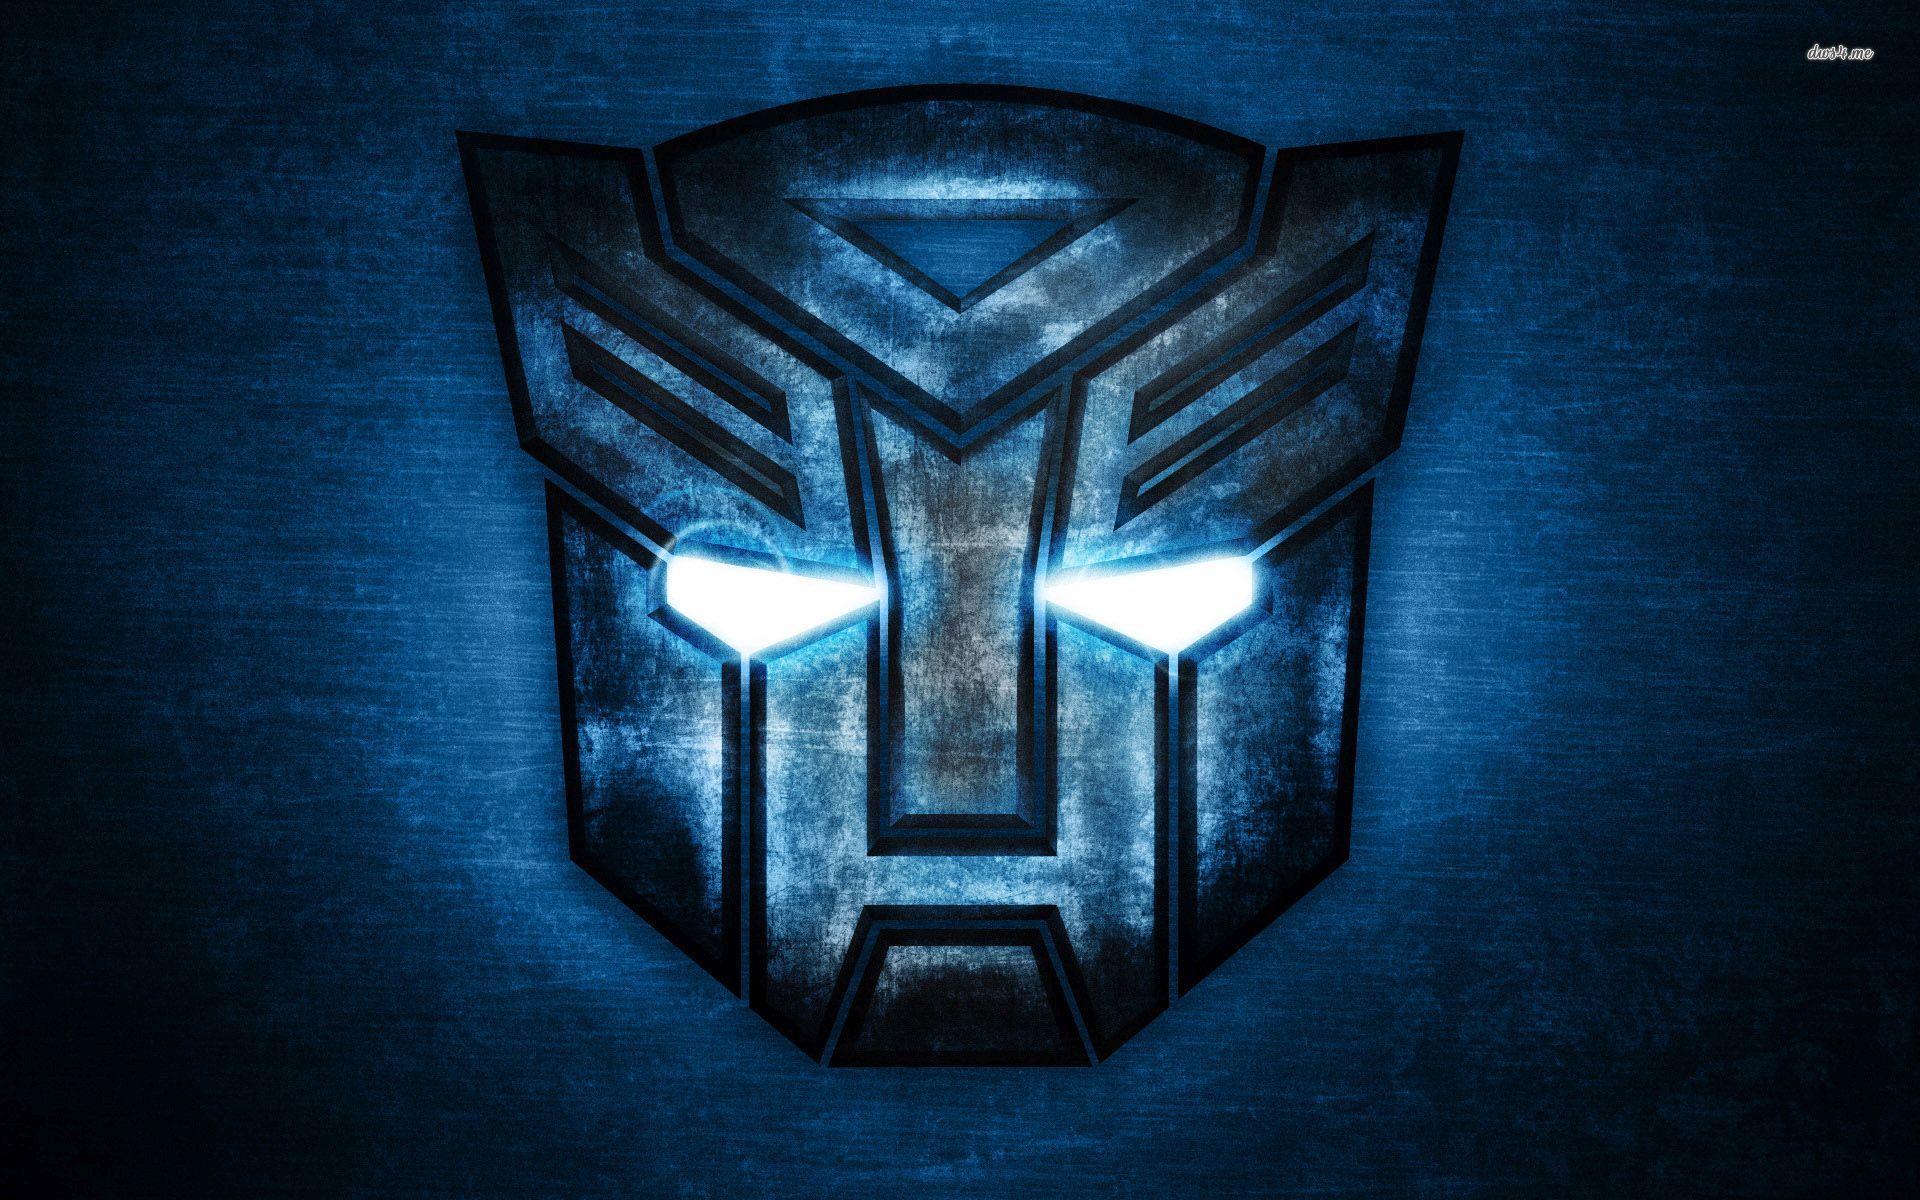 Transformers Logo: Với hình ảnh liên quan đến logo của Transformers, bạn sẽ được khám phá những chi tiết đầy tinh tế và ý nghĩa của biểu tượng mang tính biểu tượng này. Sự kết hợp của các yếu tố mang tính quyết định và chiến lược sẽ khiến bạn cảm thấy thú vị và muốn biết thêm về Transformers.